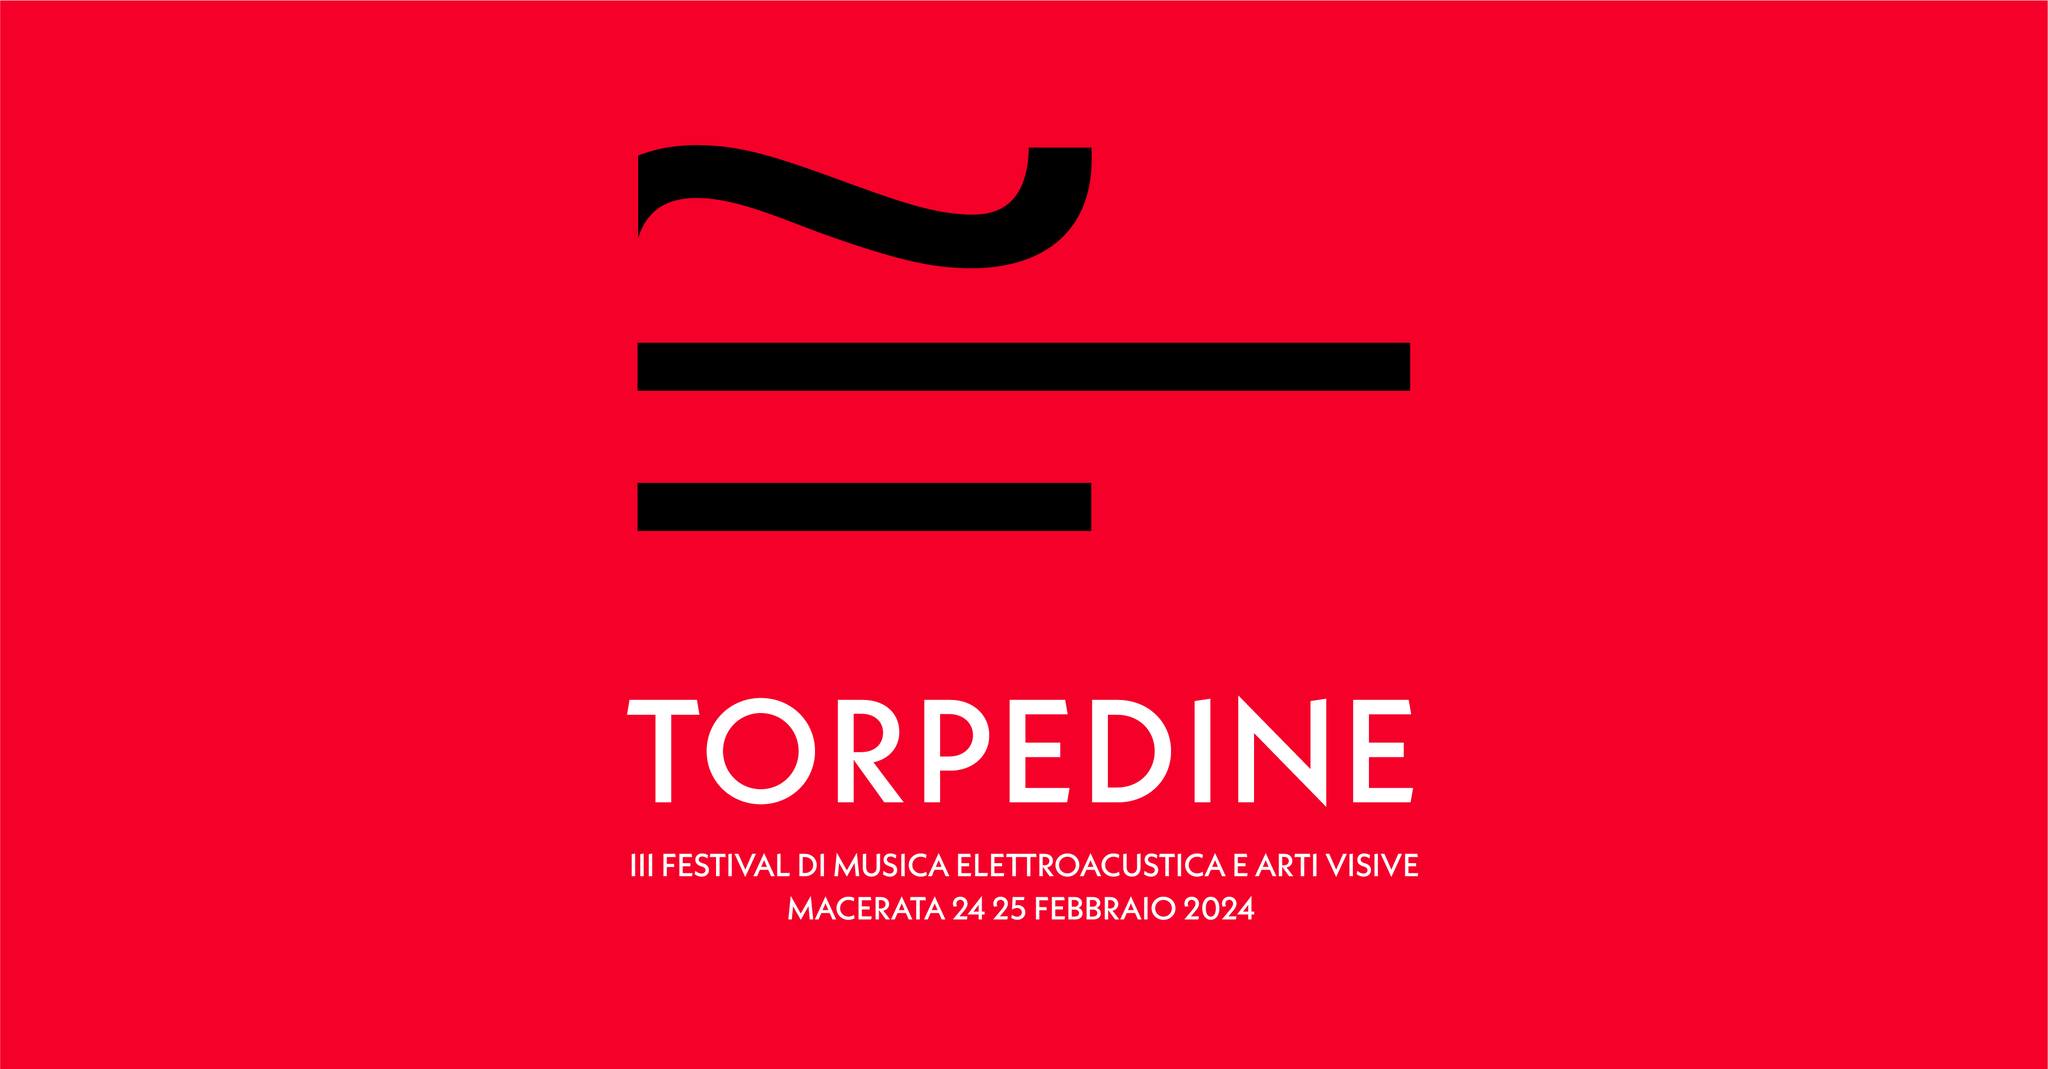 Torpedine, festival di musica elettroacustica e arti visive a Macerata